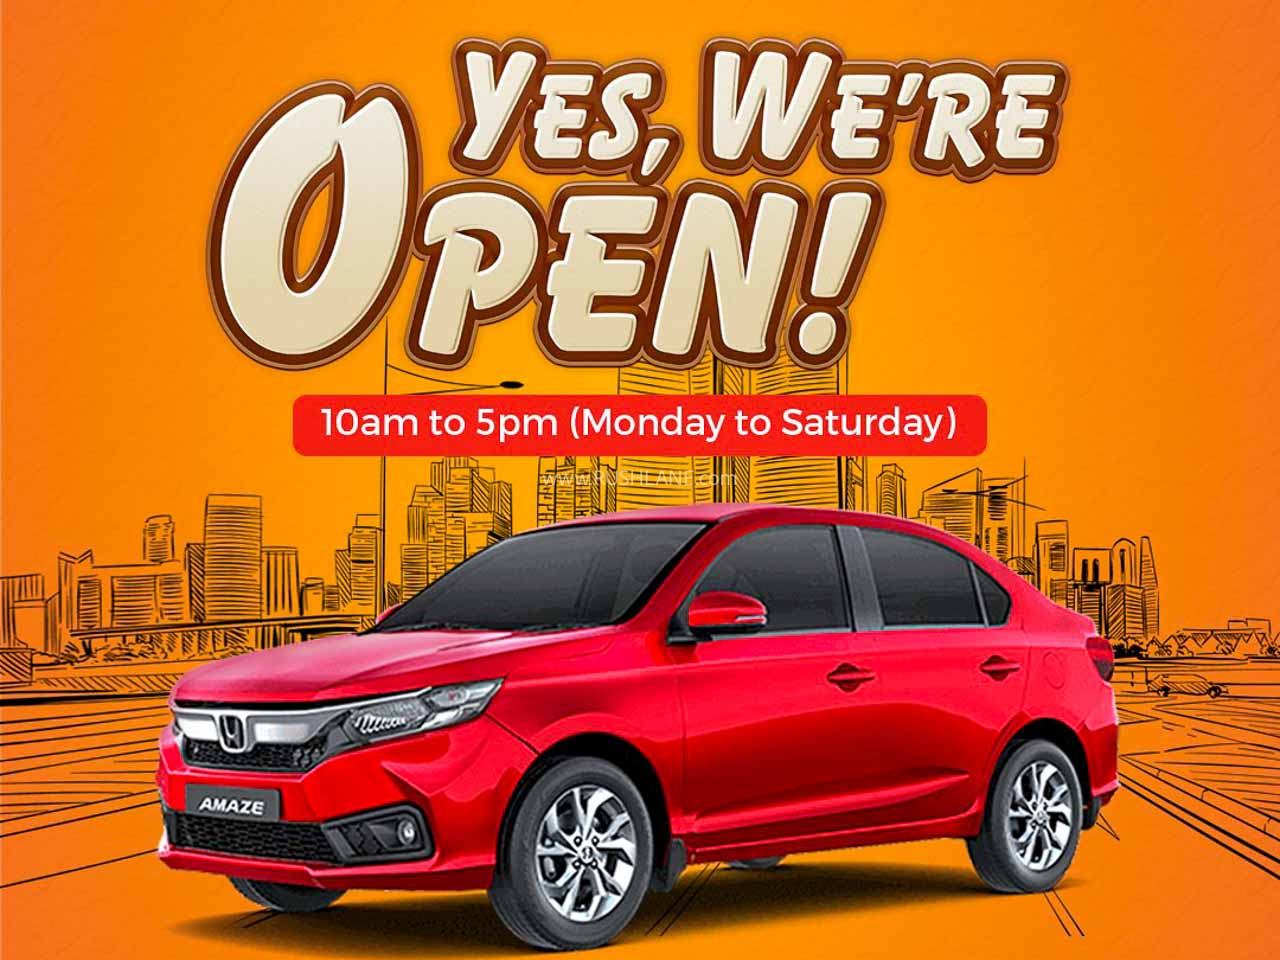 Honda Cars dealer open